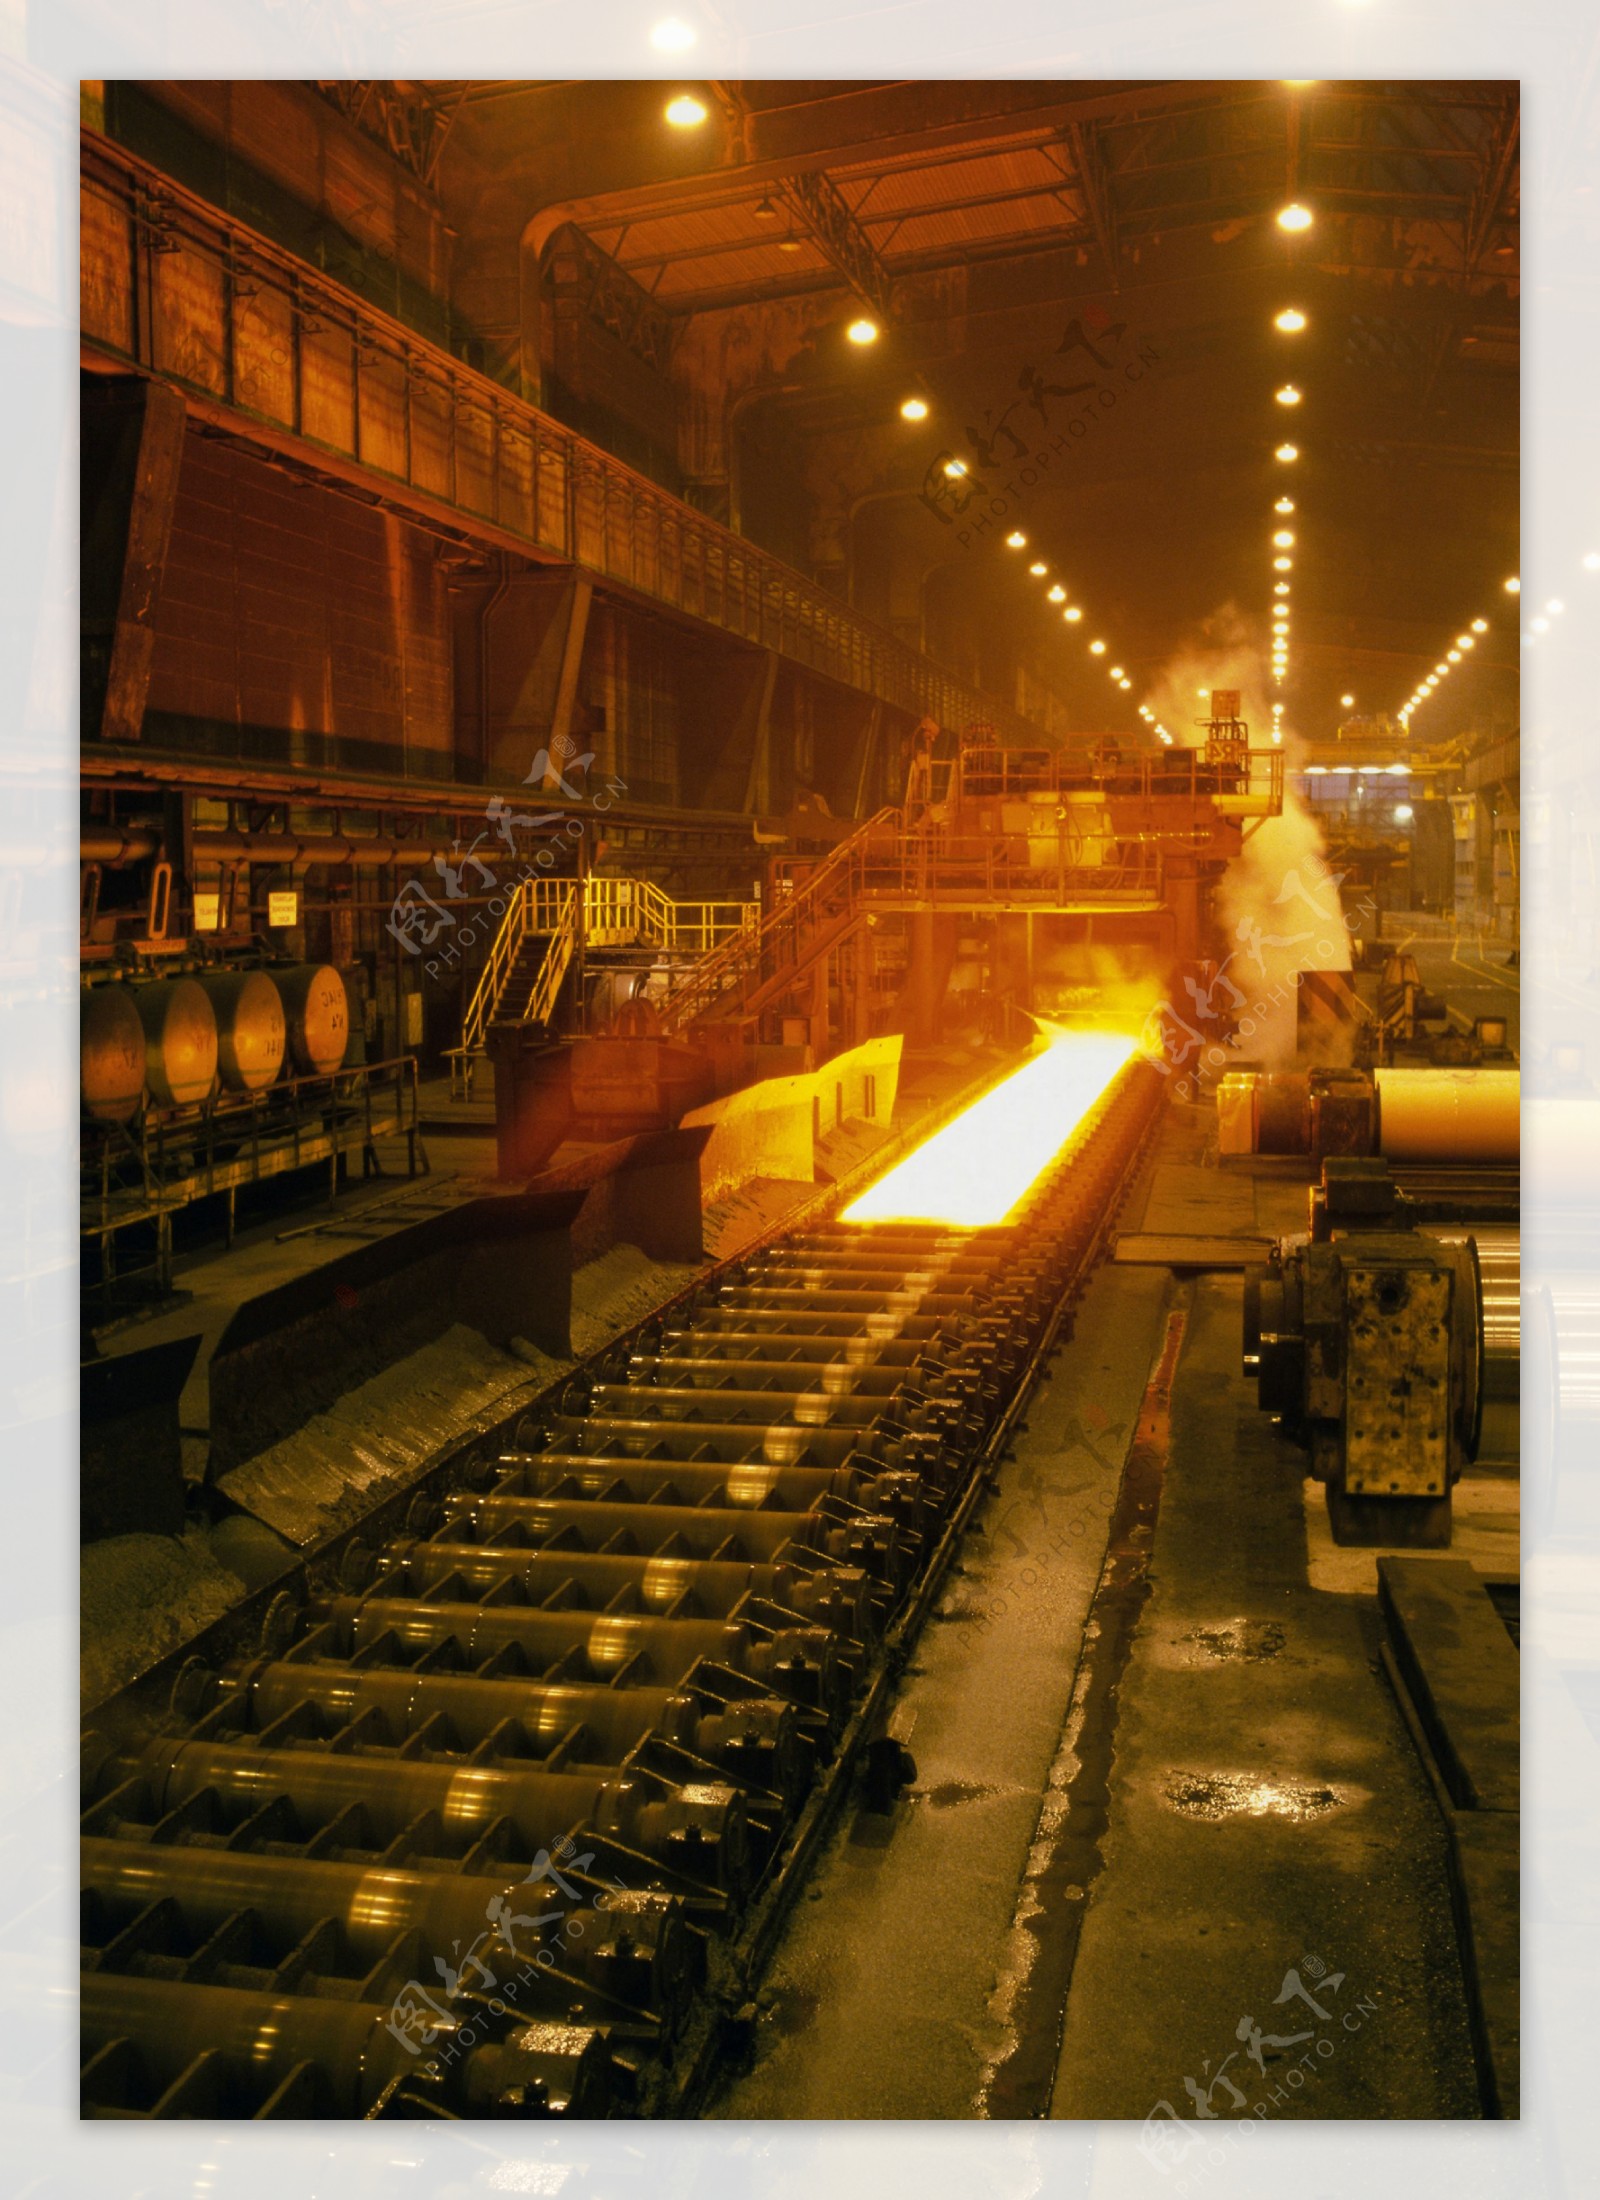 炼铁炼钢生产线图片